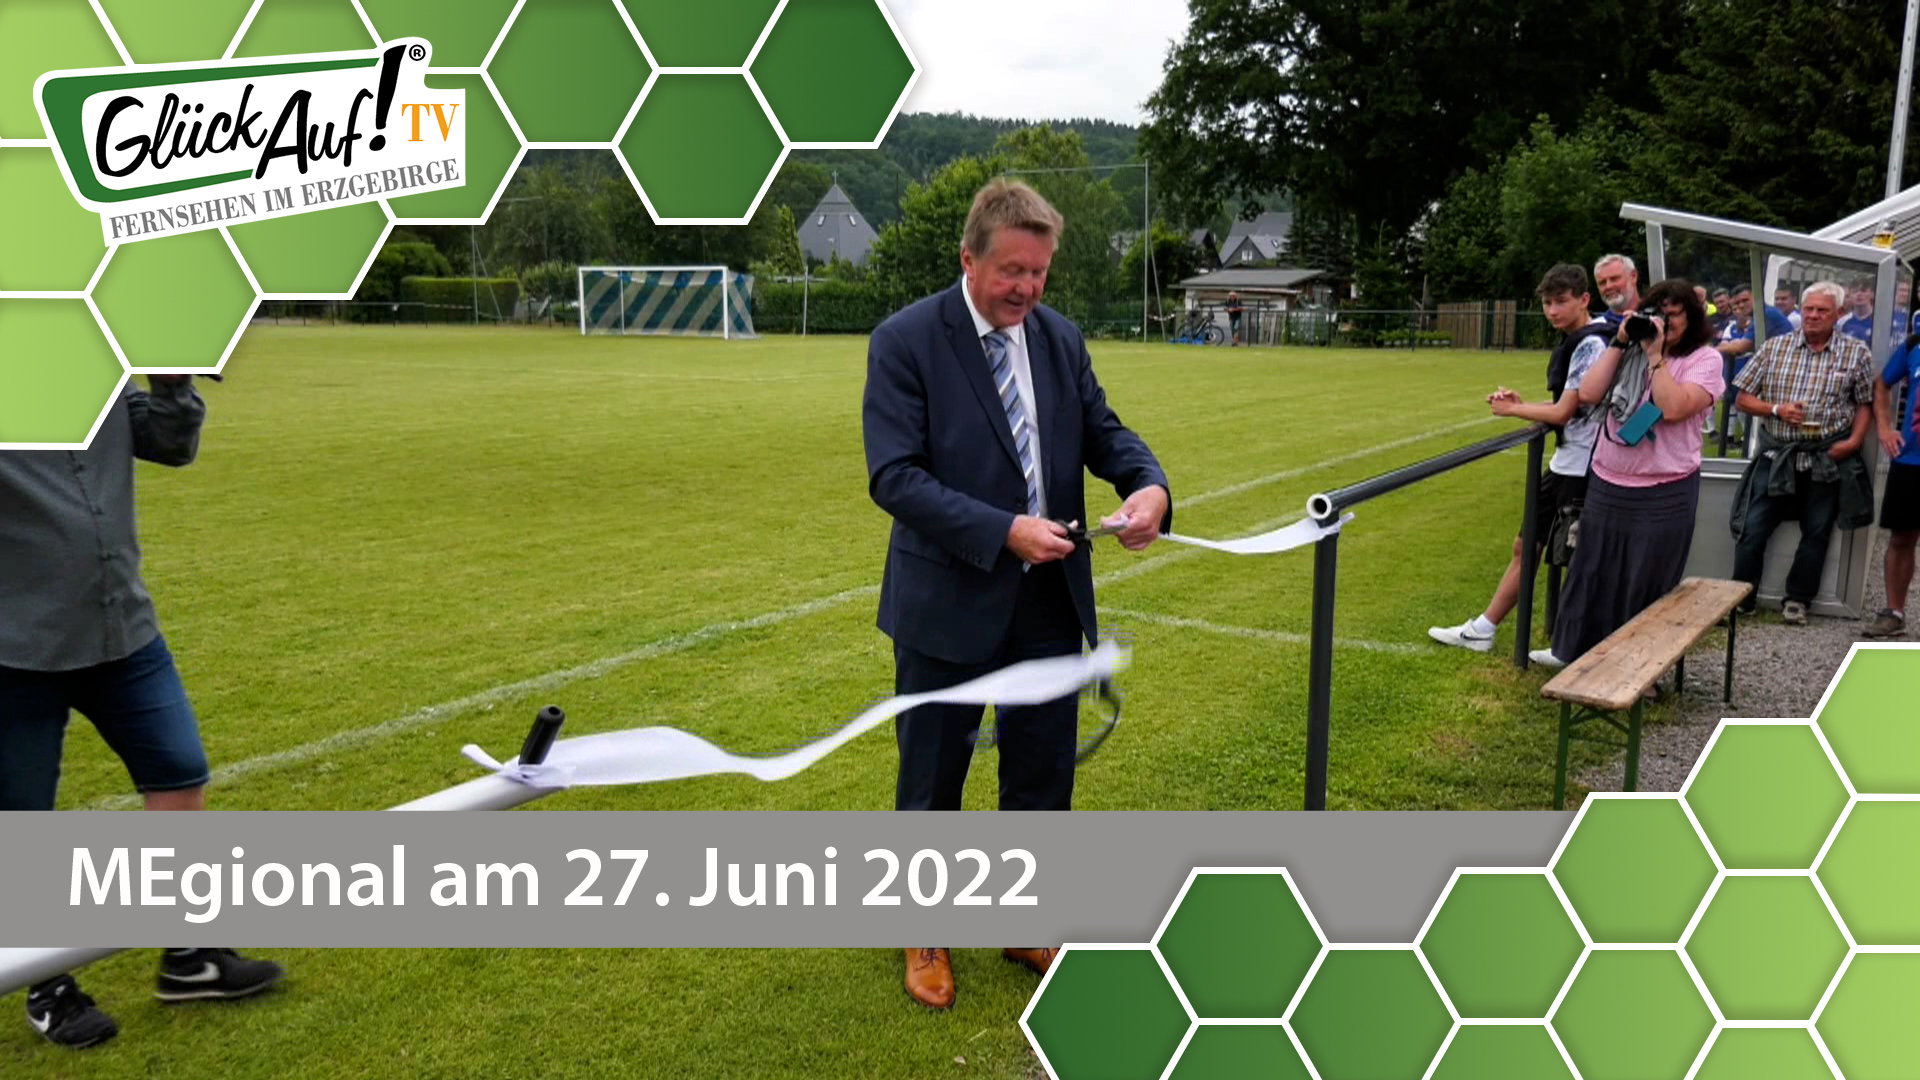 MEgional am 27. Juni 2022 - mit der Wiedereröffnung des Olbernhauer Stadions